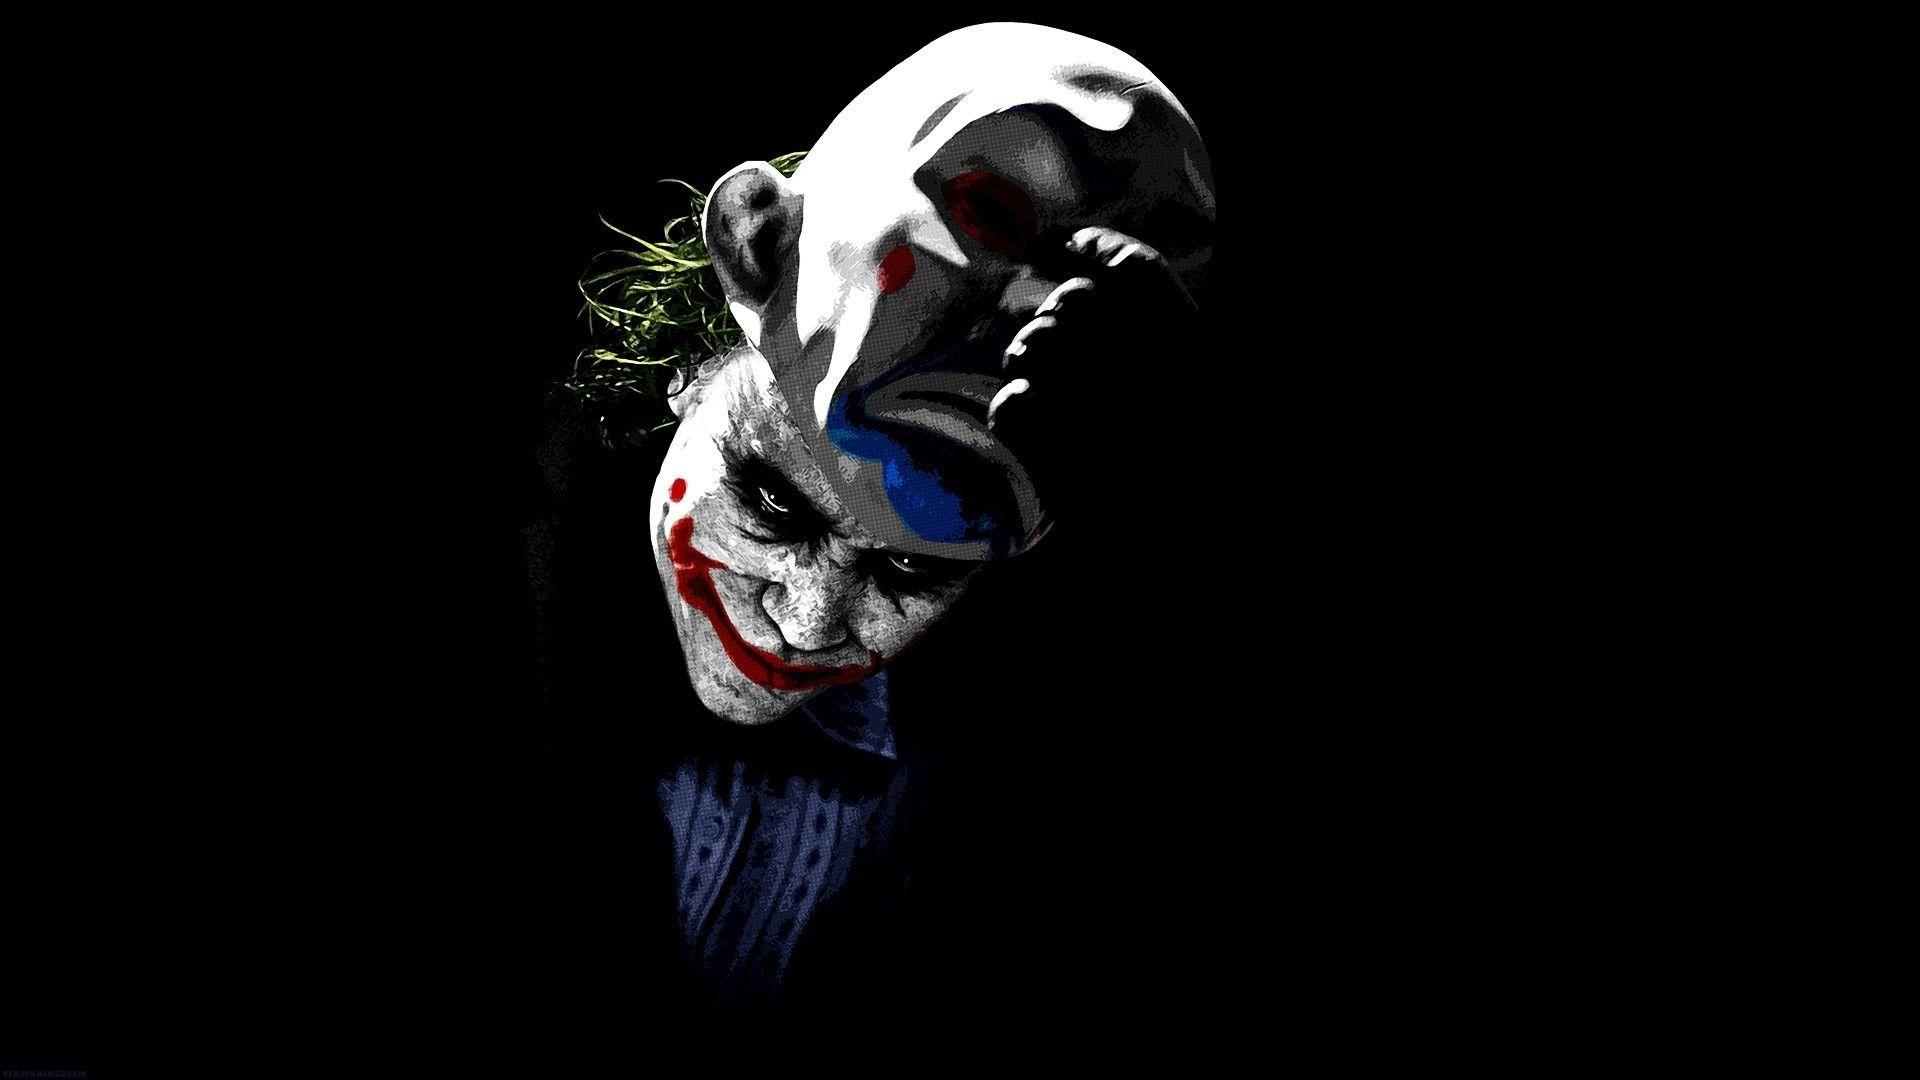 Joker batman the dark knight wallpaper. Batman 3D • Batman Infos und